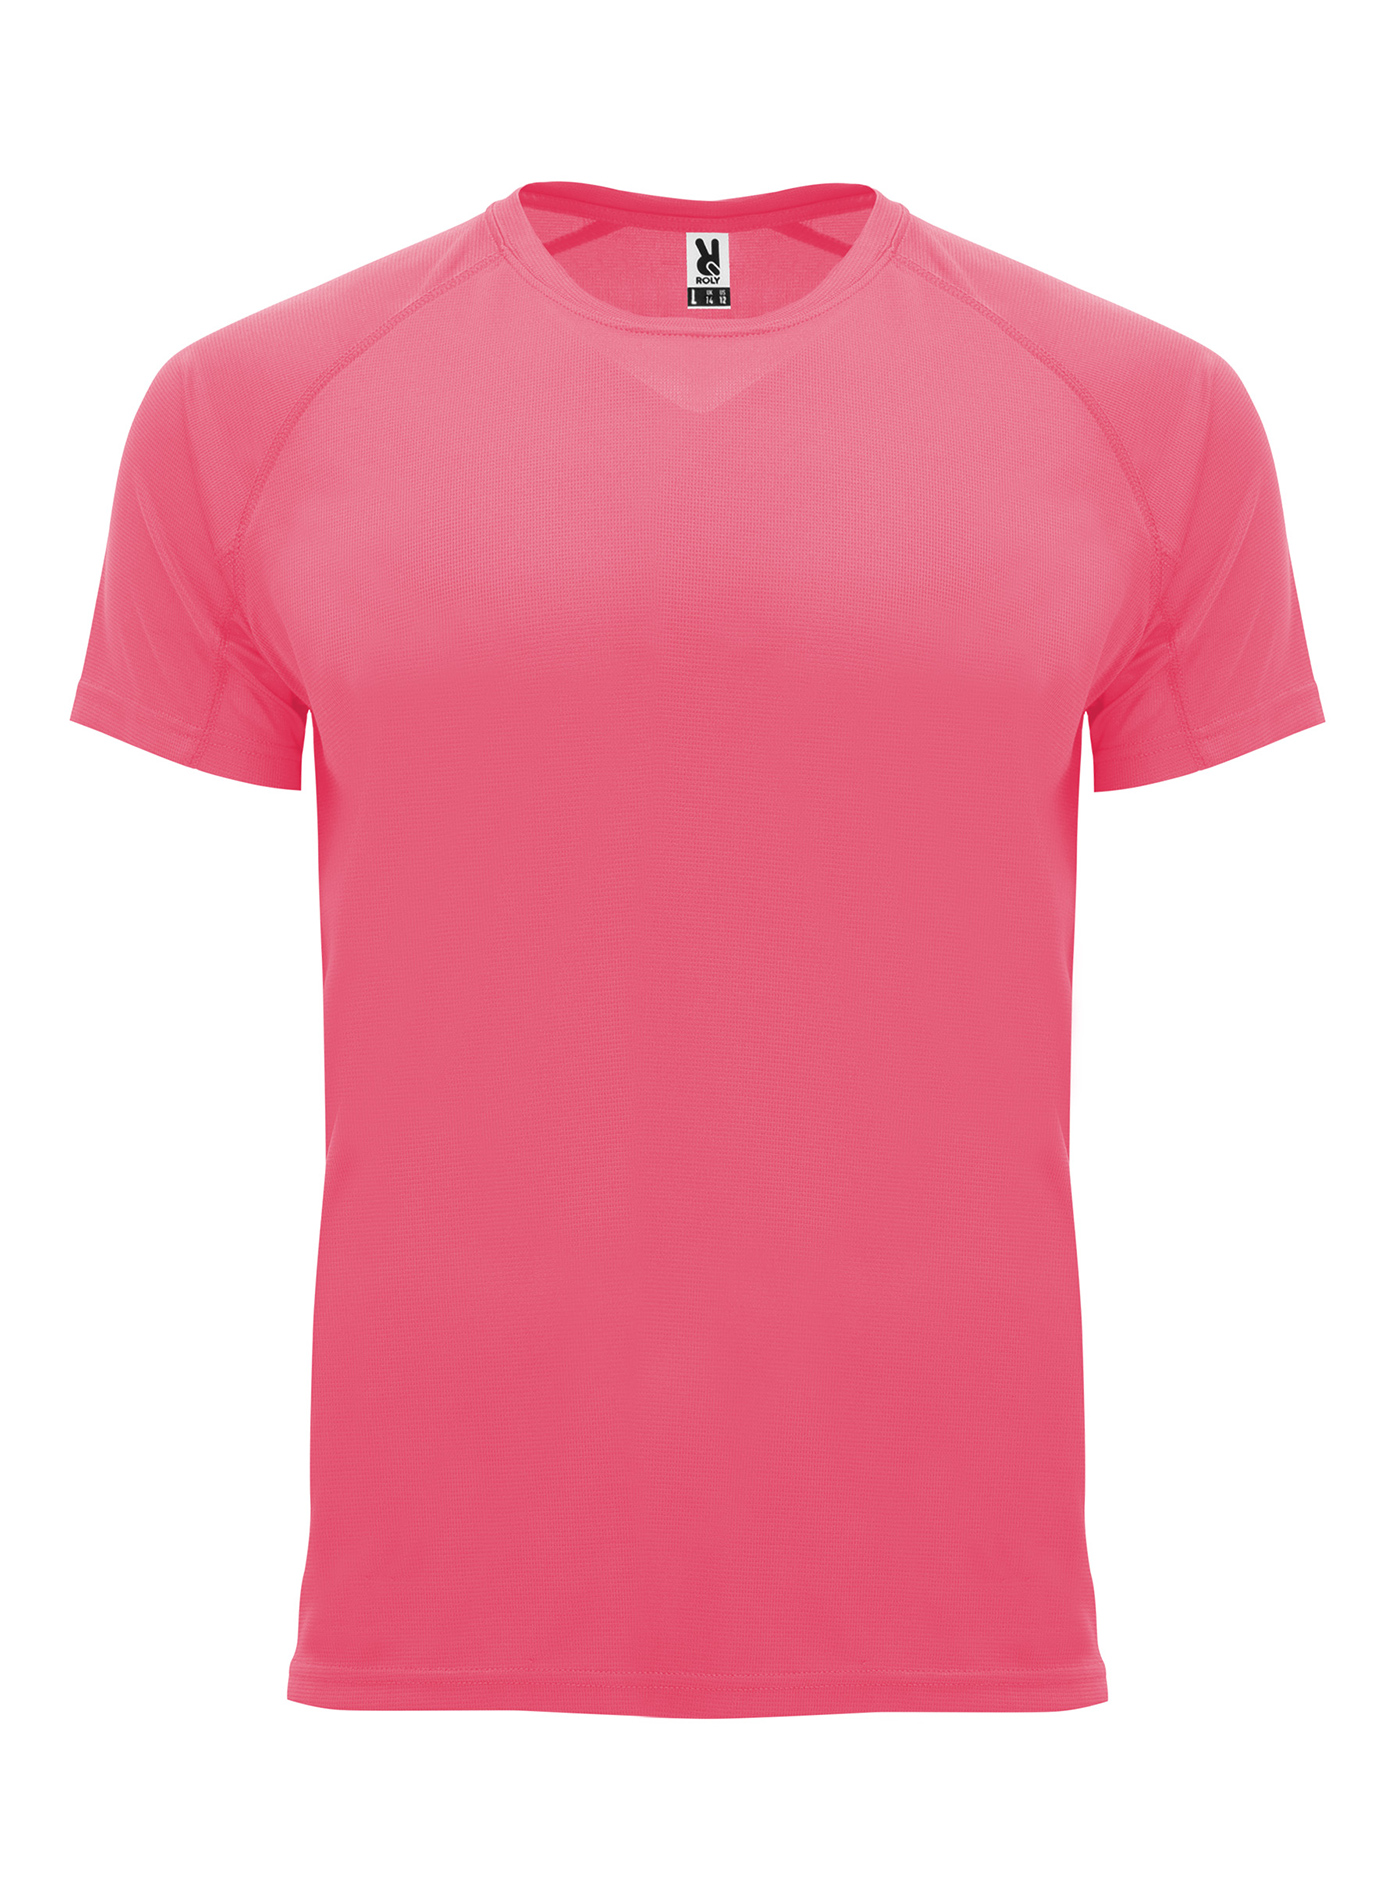 Pánské sportovní tričko Roly Bahrain - Zářivá růžová L